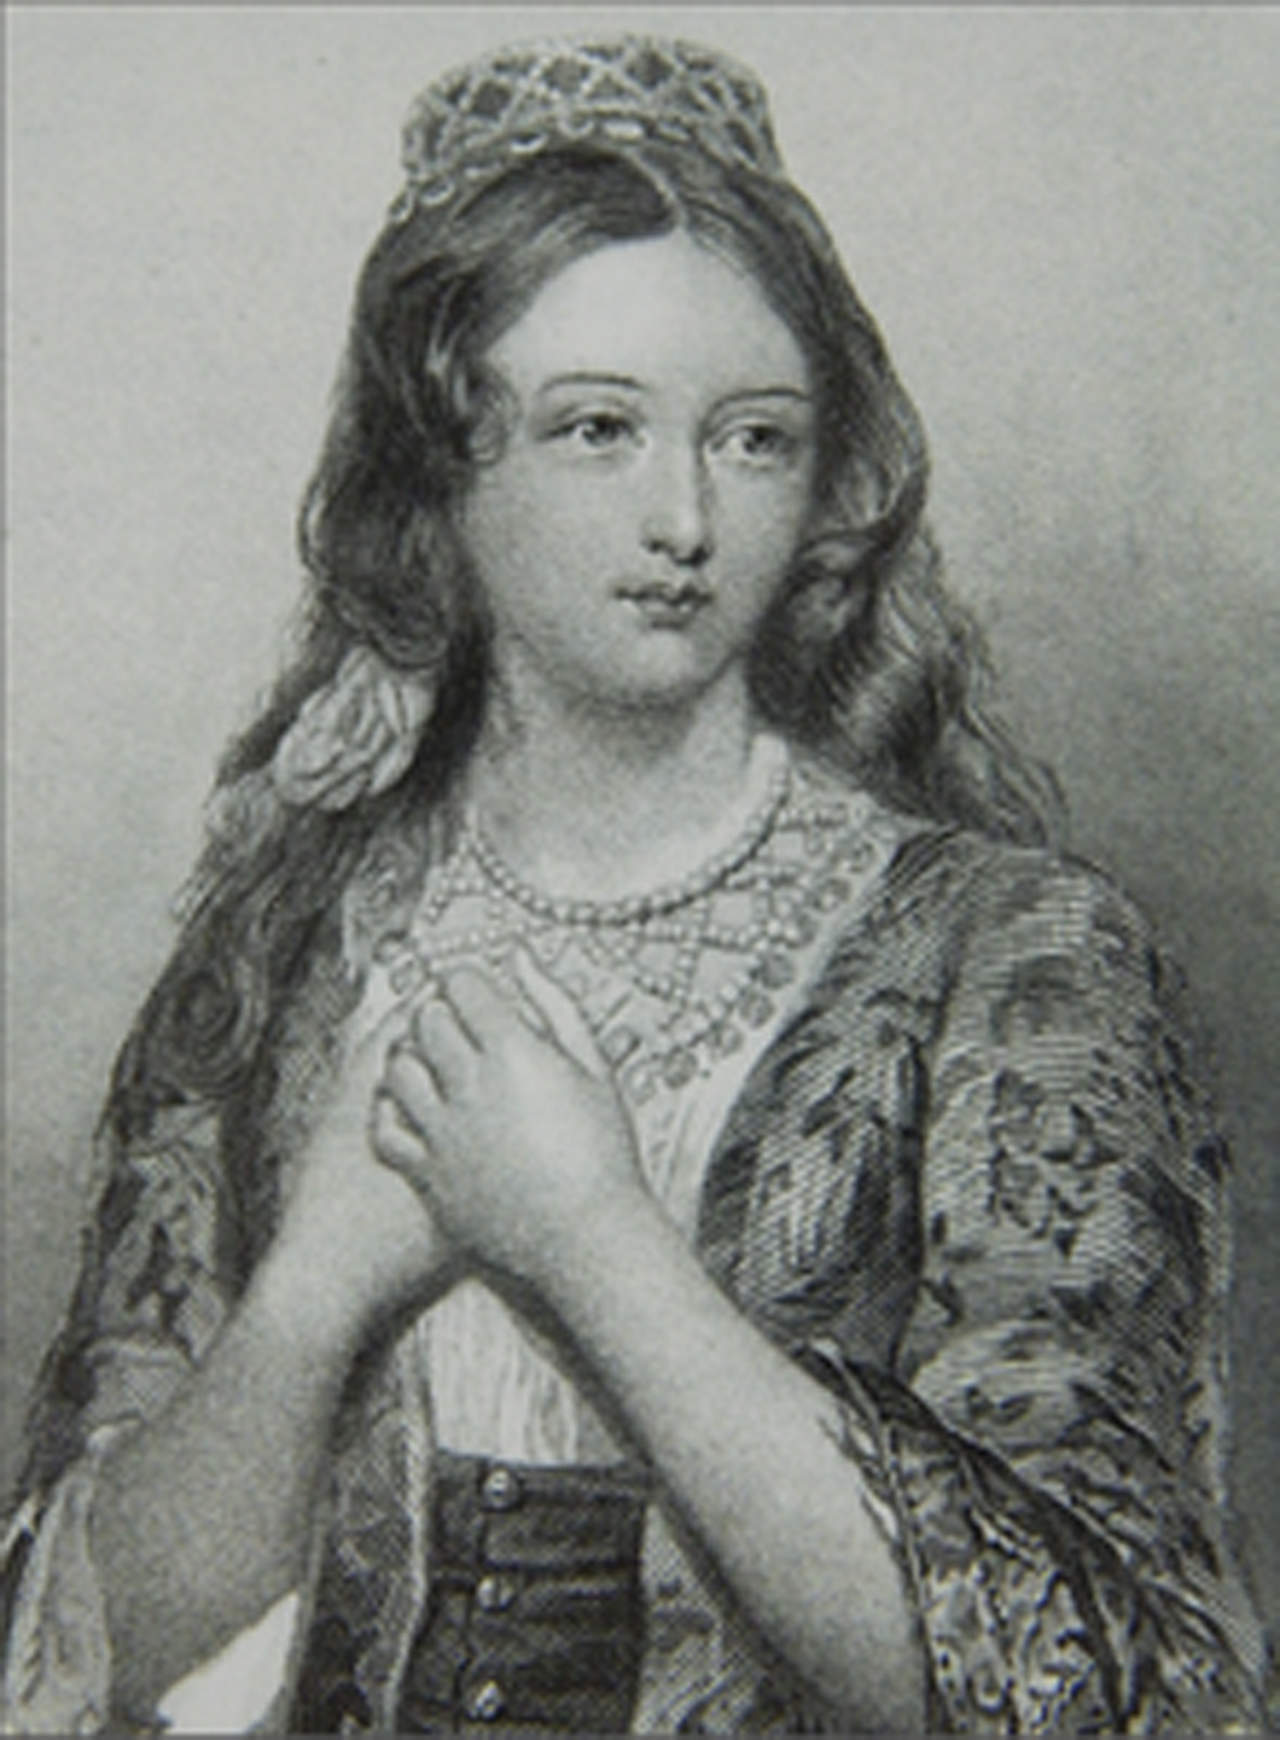 Posible retrato a lápiz de María Ignacia La 'Güera' Rodríguez,  de quien difícilmente se conservan imágenes  que sean concluyentes de su efigie.
